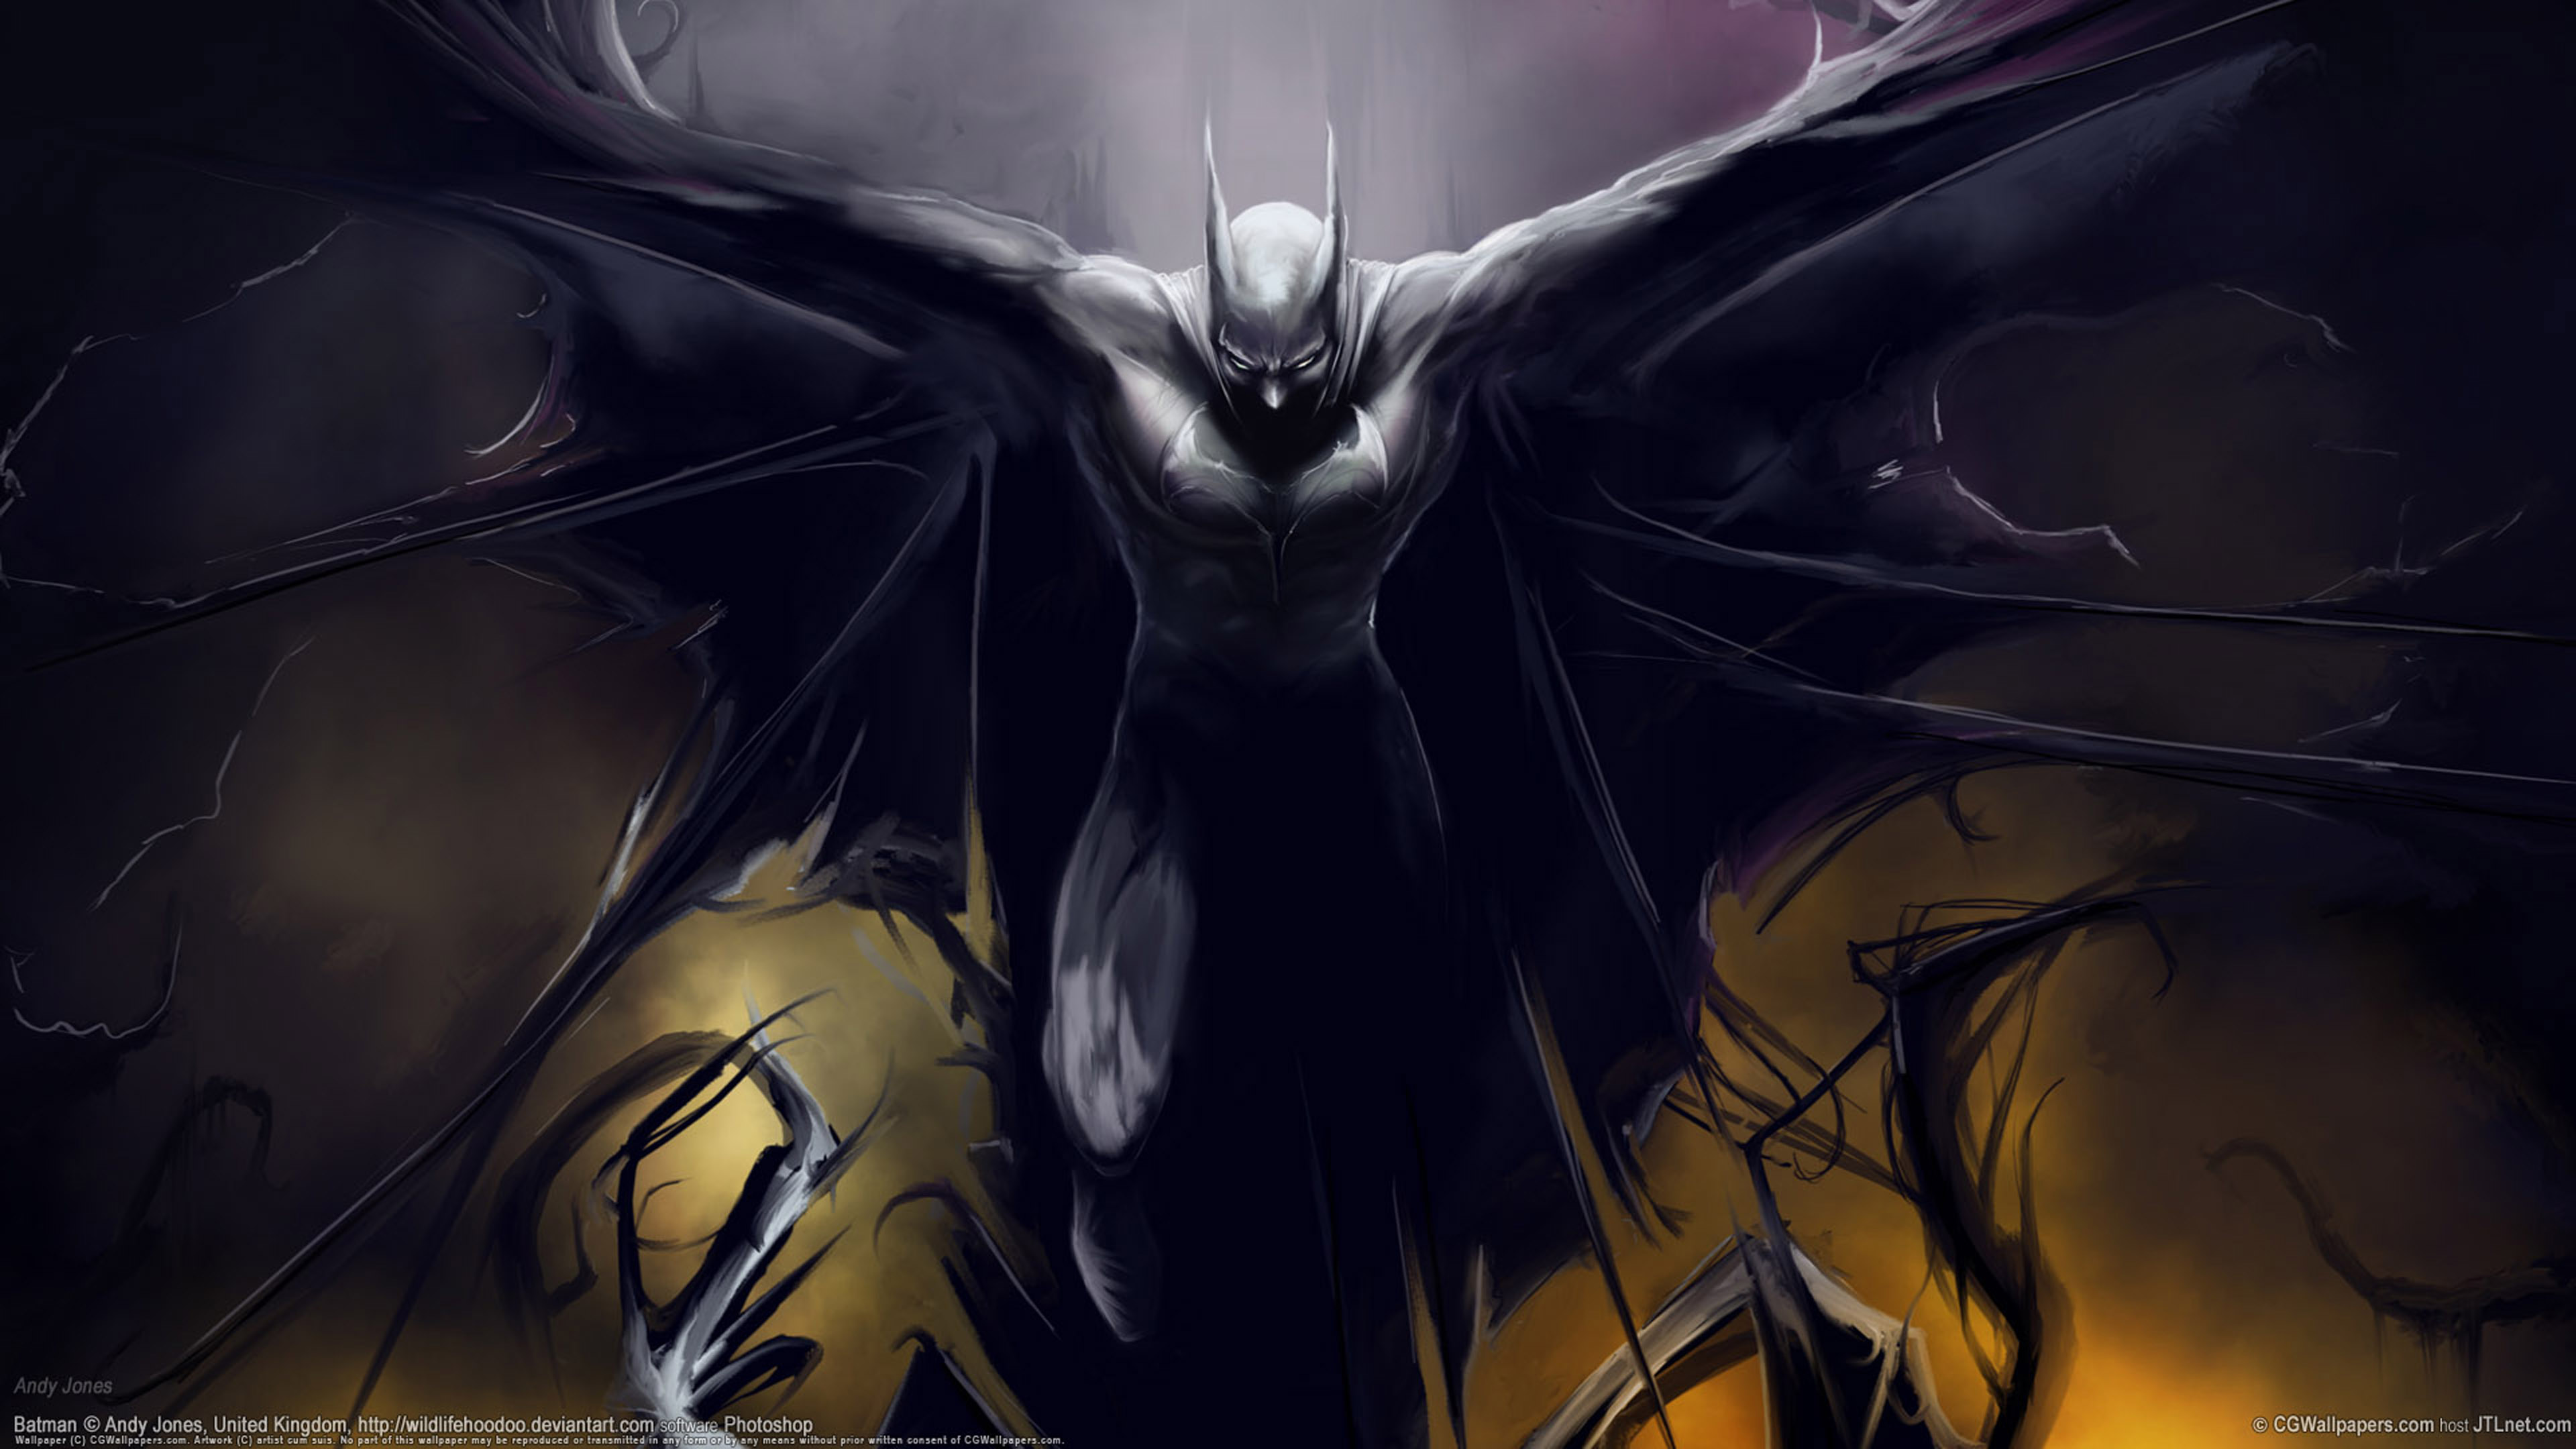 Batman Wings Digital Art Fantasy Desktop Wallpaper Hd For Mobile Phones